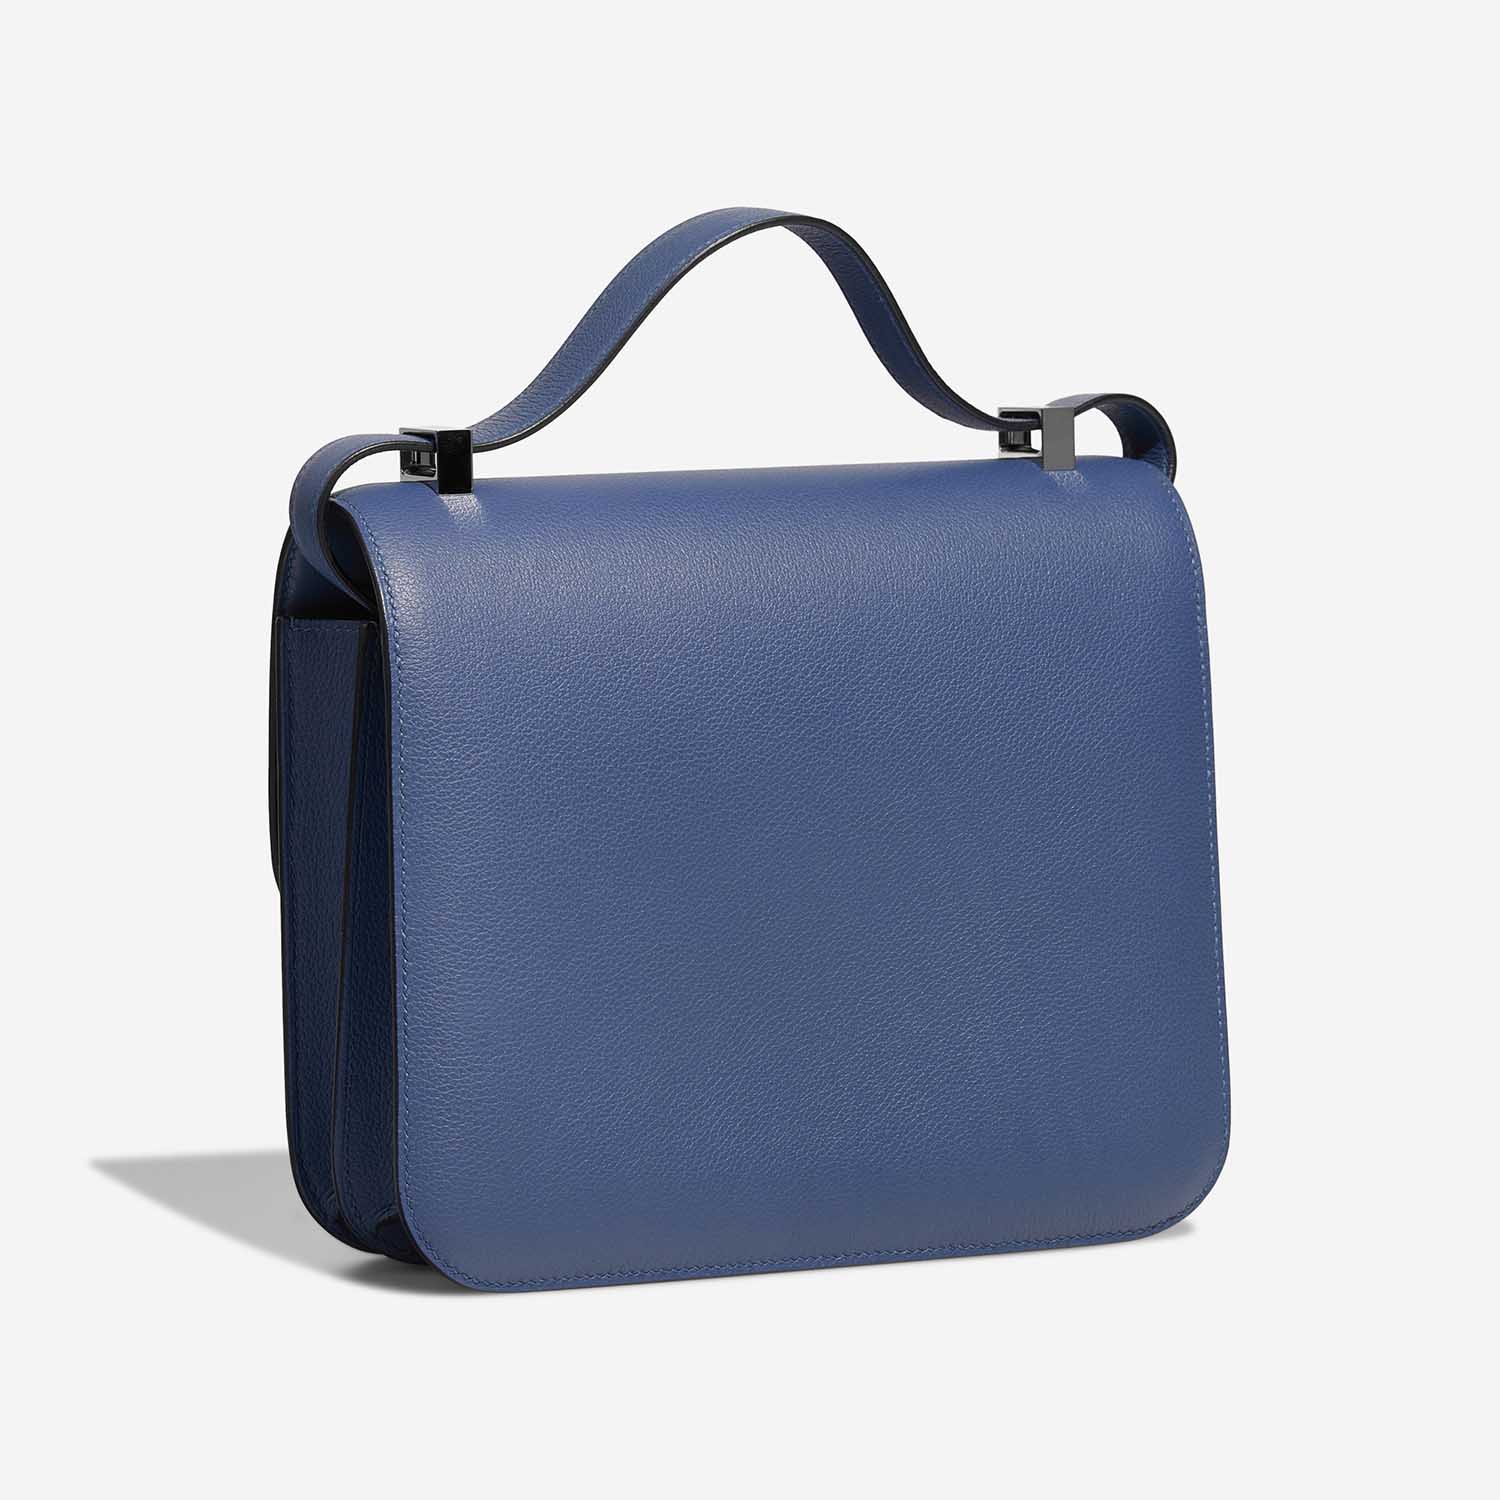 Hermès Constance 24 BleuBrighton Side Back | Sell your designer bag on Saclab.com